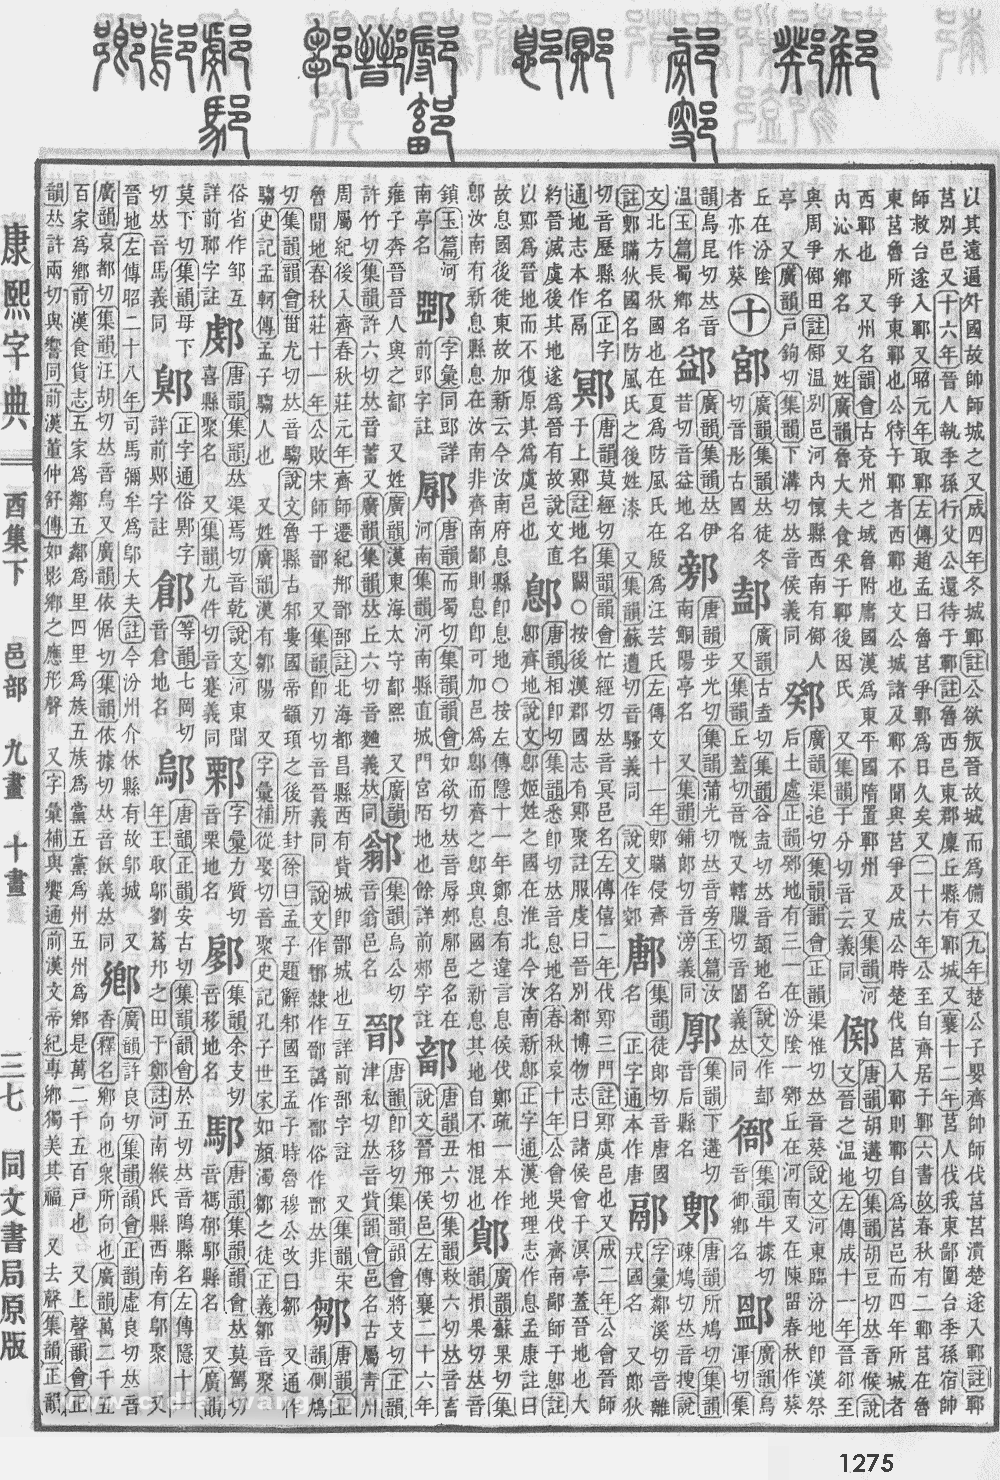 康熙字典掃描版第1275頁